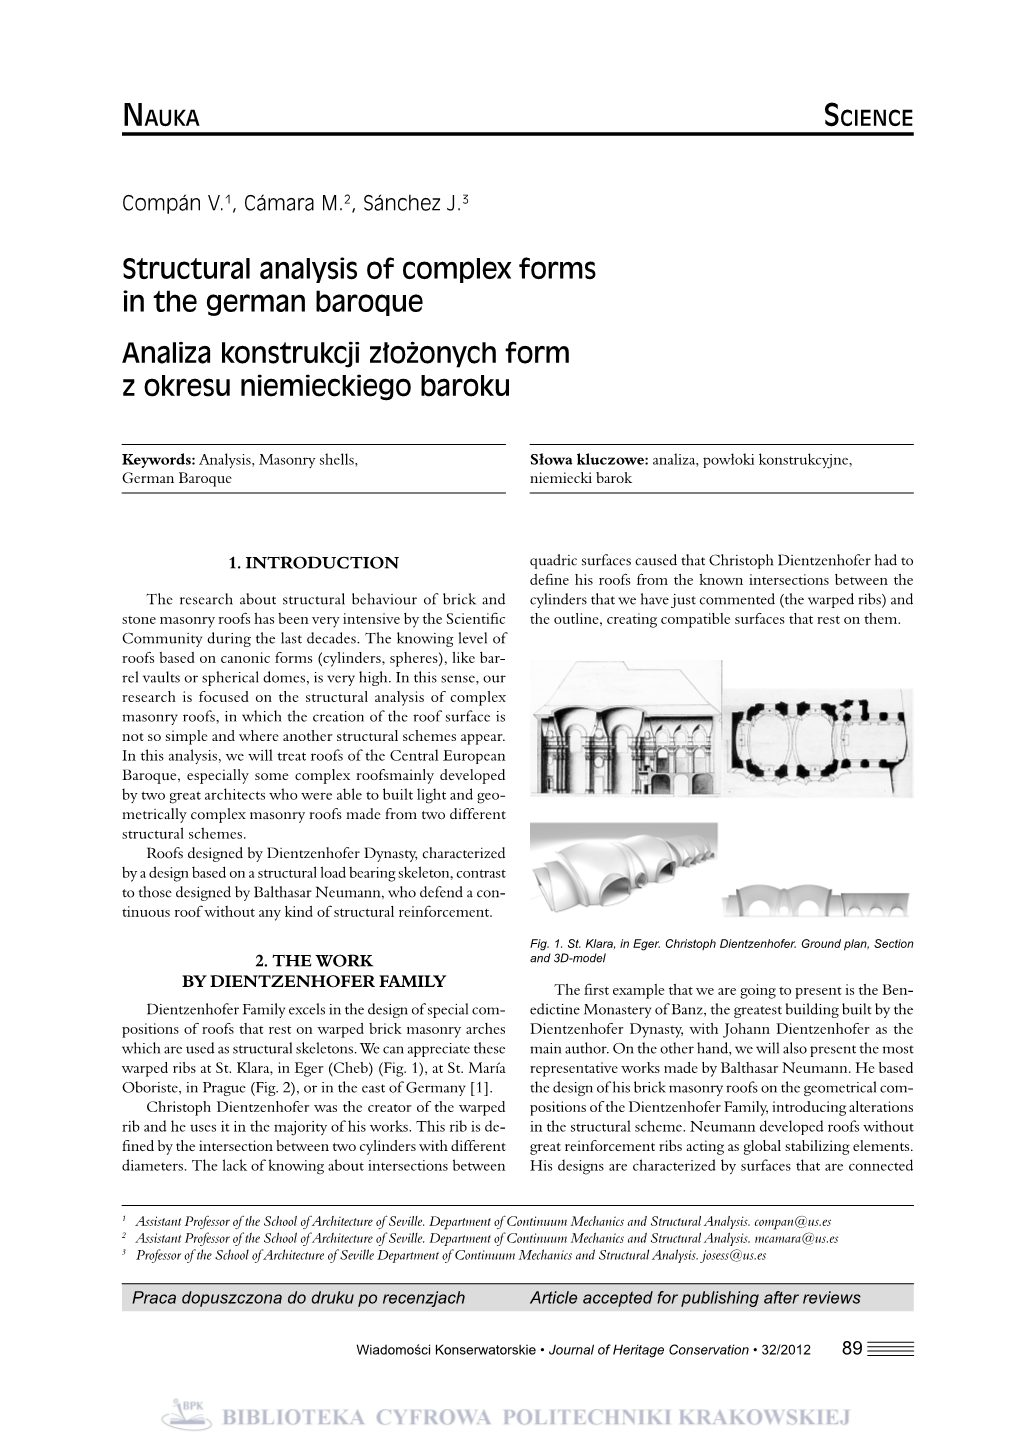 Structural Analysis of Complex Forms in the German Baroque Analiza Konstrukcji Złożonych Form Z Okresu Niemieckiego Baroku